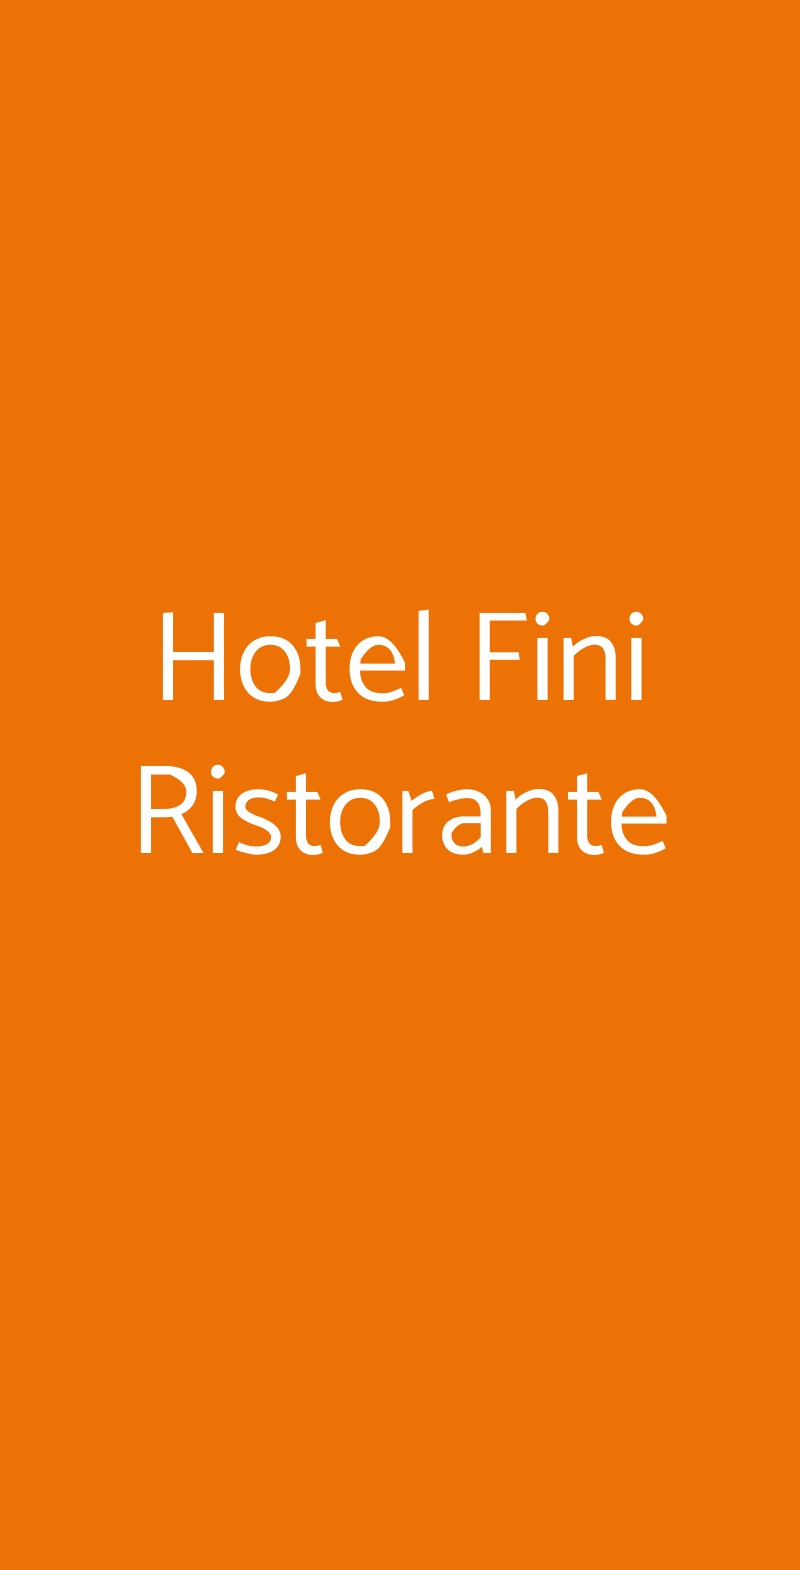 Hotel Fini Ristorante San Giovanni Rotondo menù 1 pagina